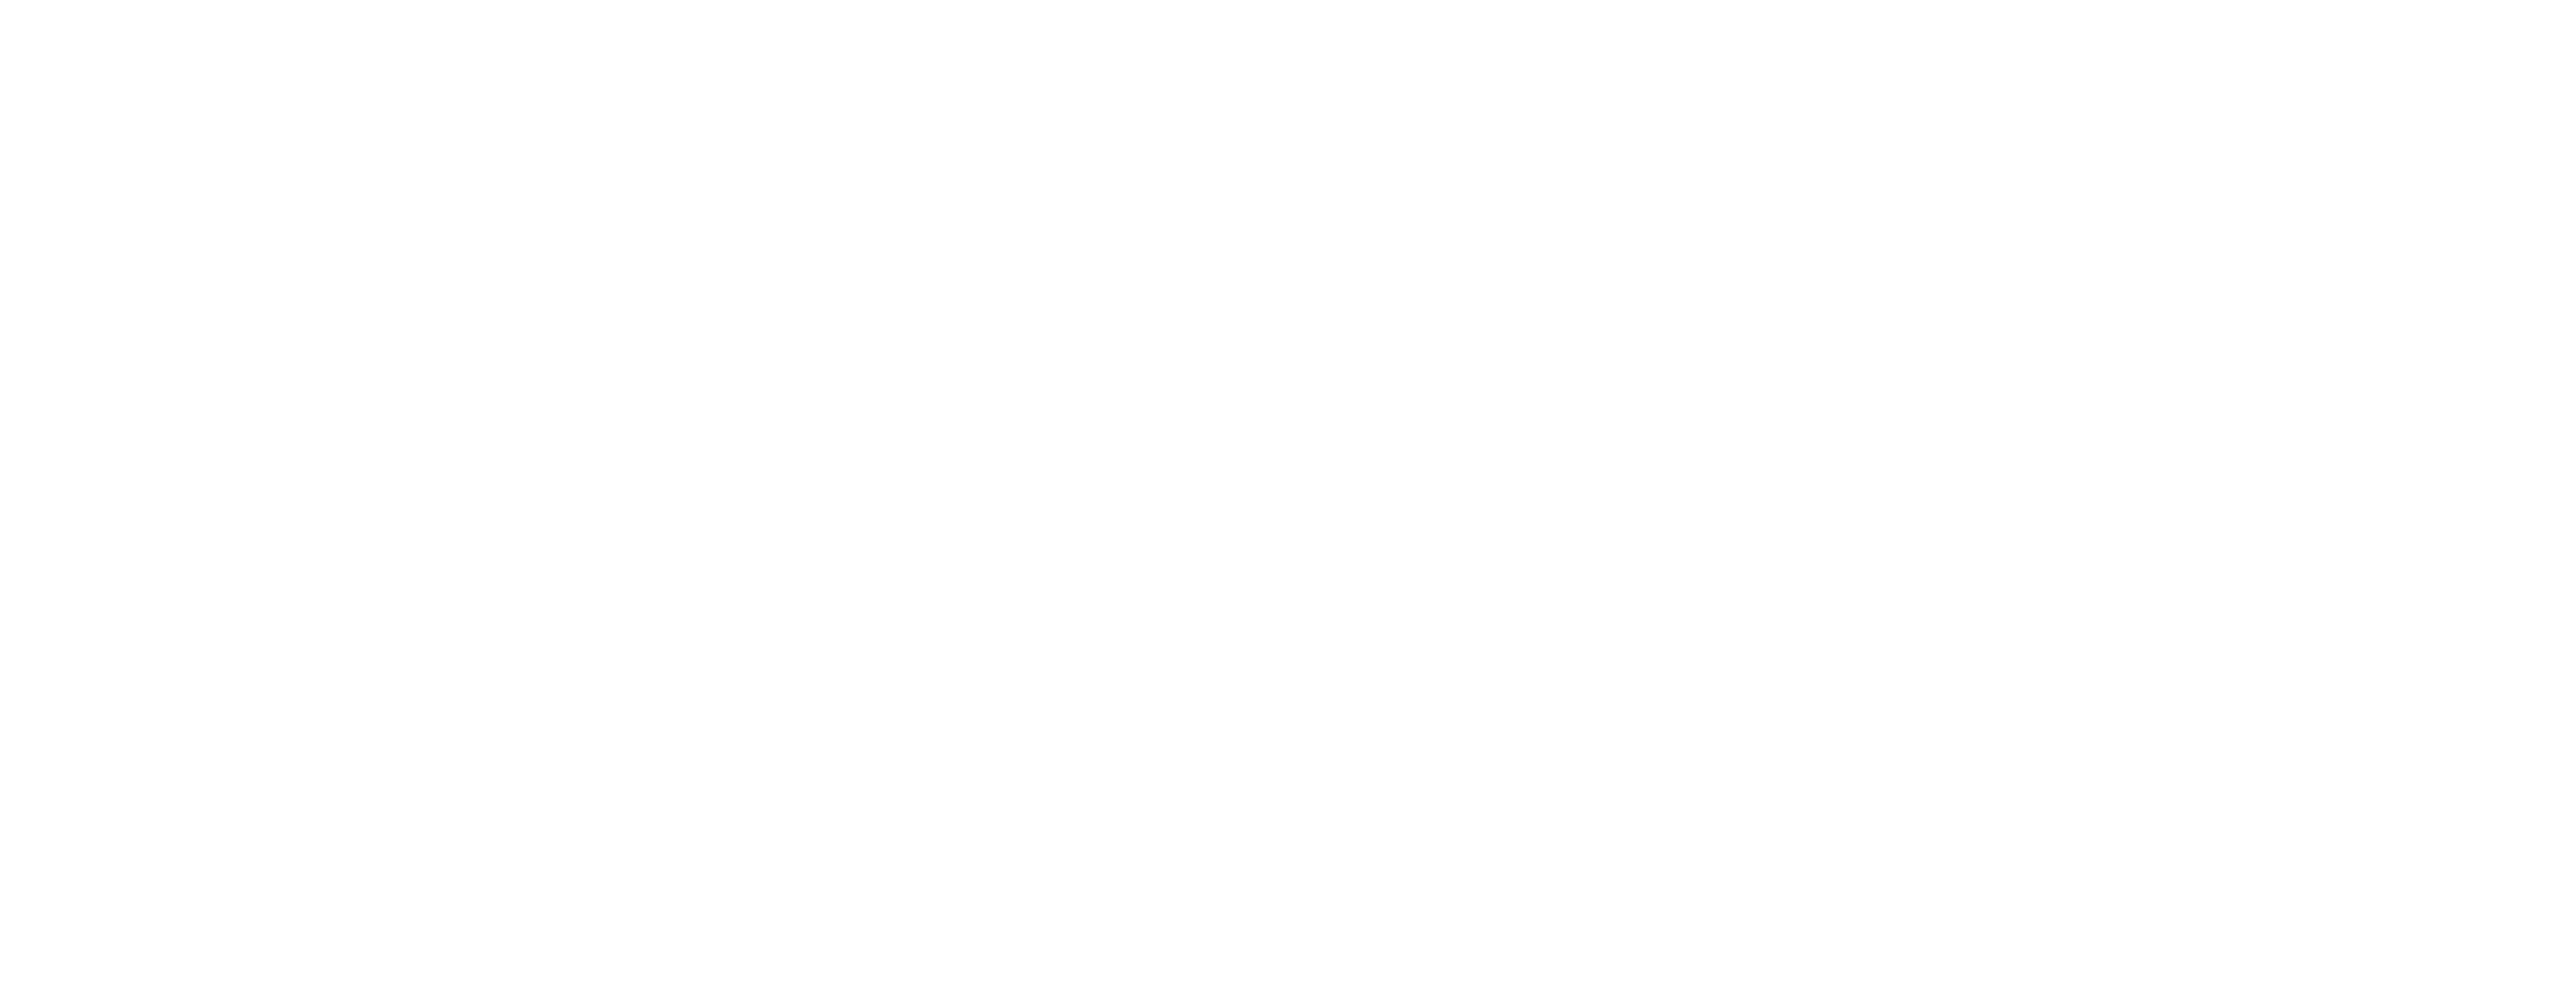 CU CAFLS logo white